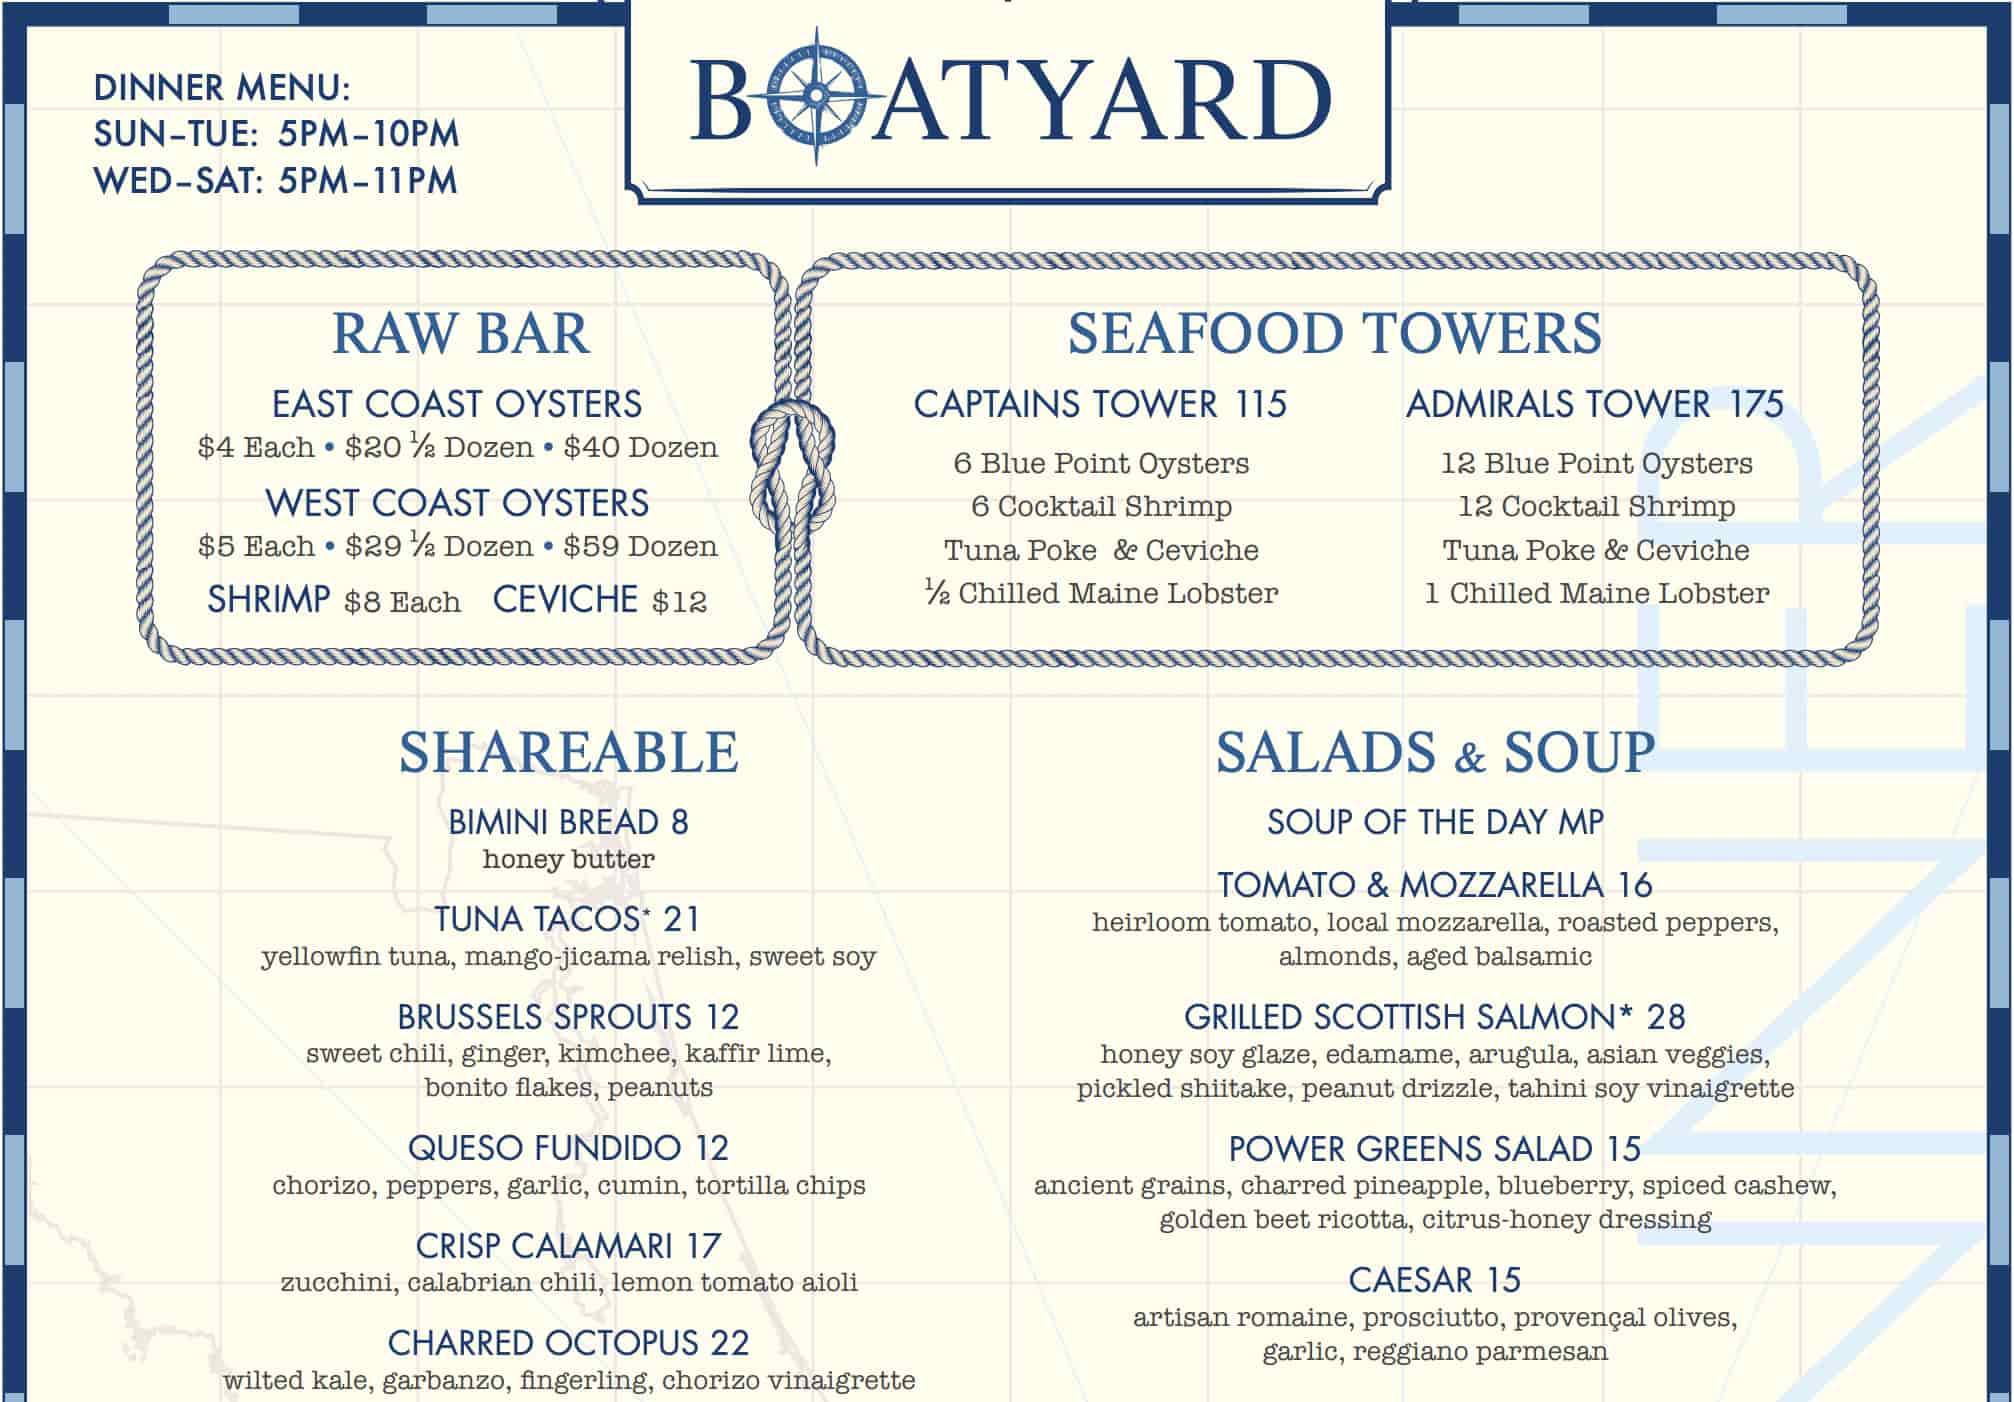 Boatyard Dinner Menu